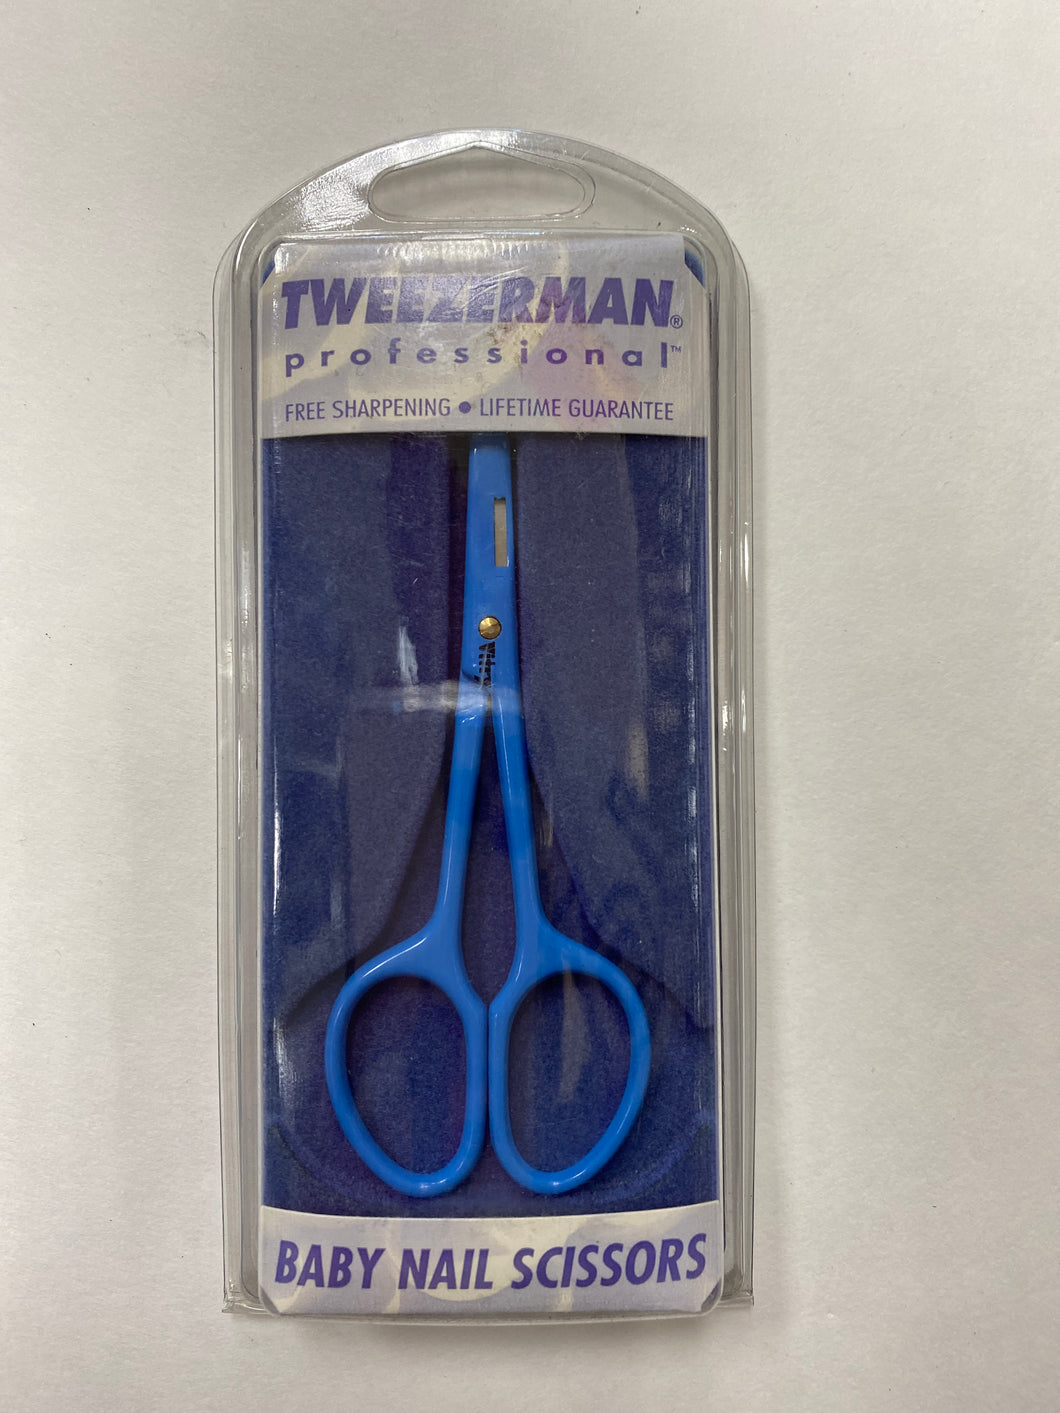 Tweezerman Professional Baby Nails Scissors